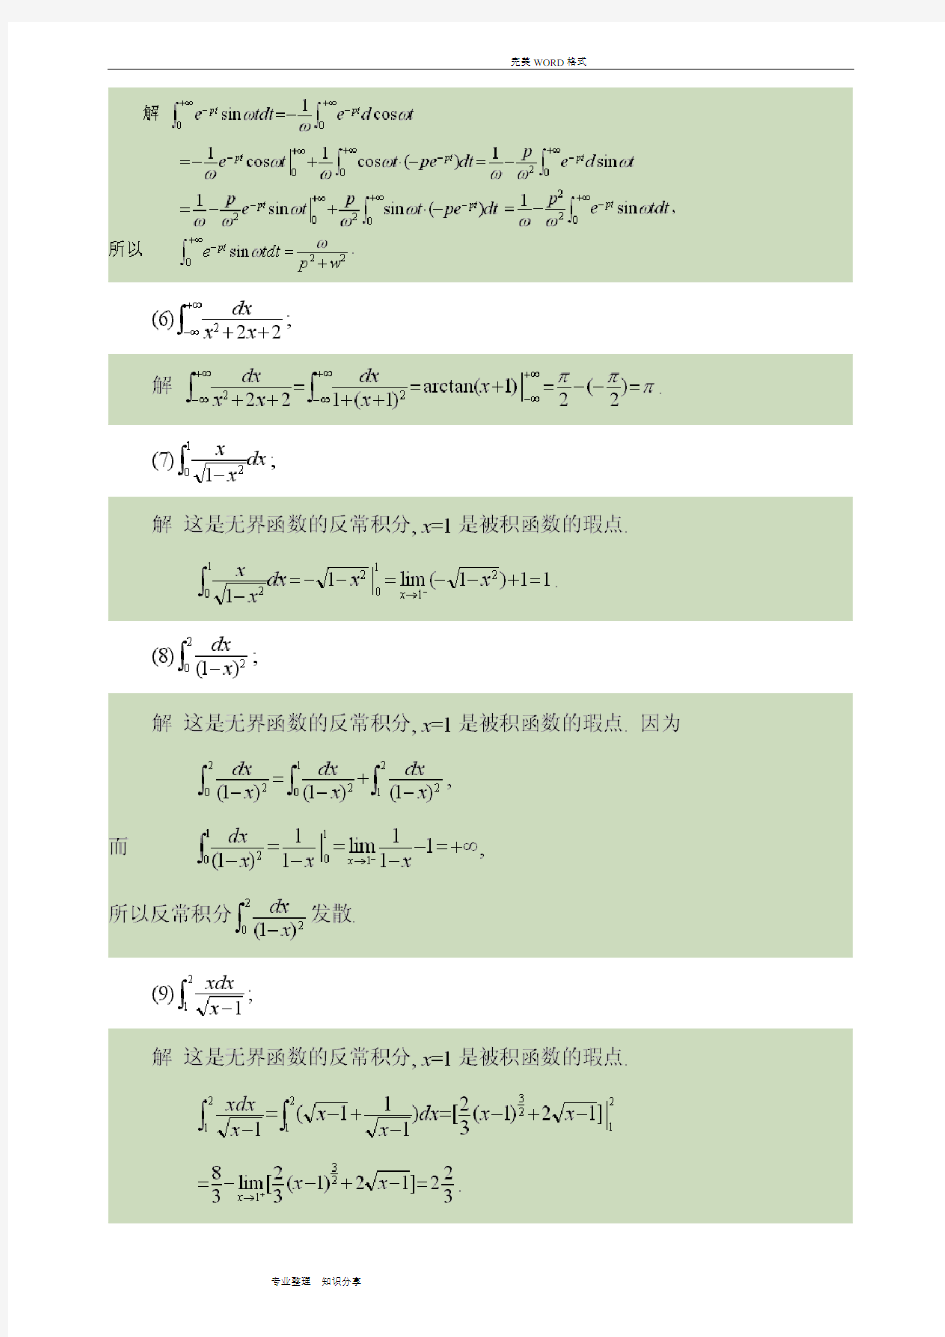 同济大学《高等数学》第五版[上册]的答案解析